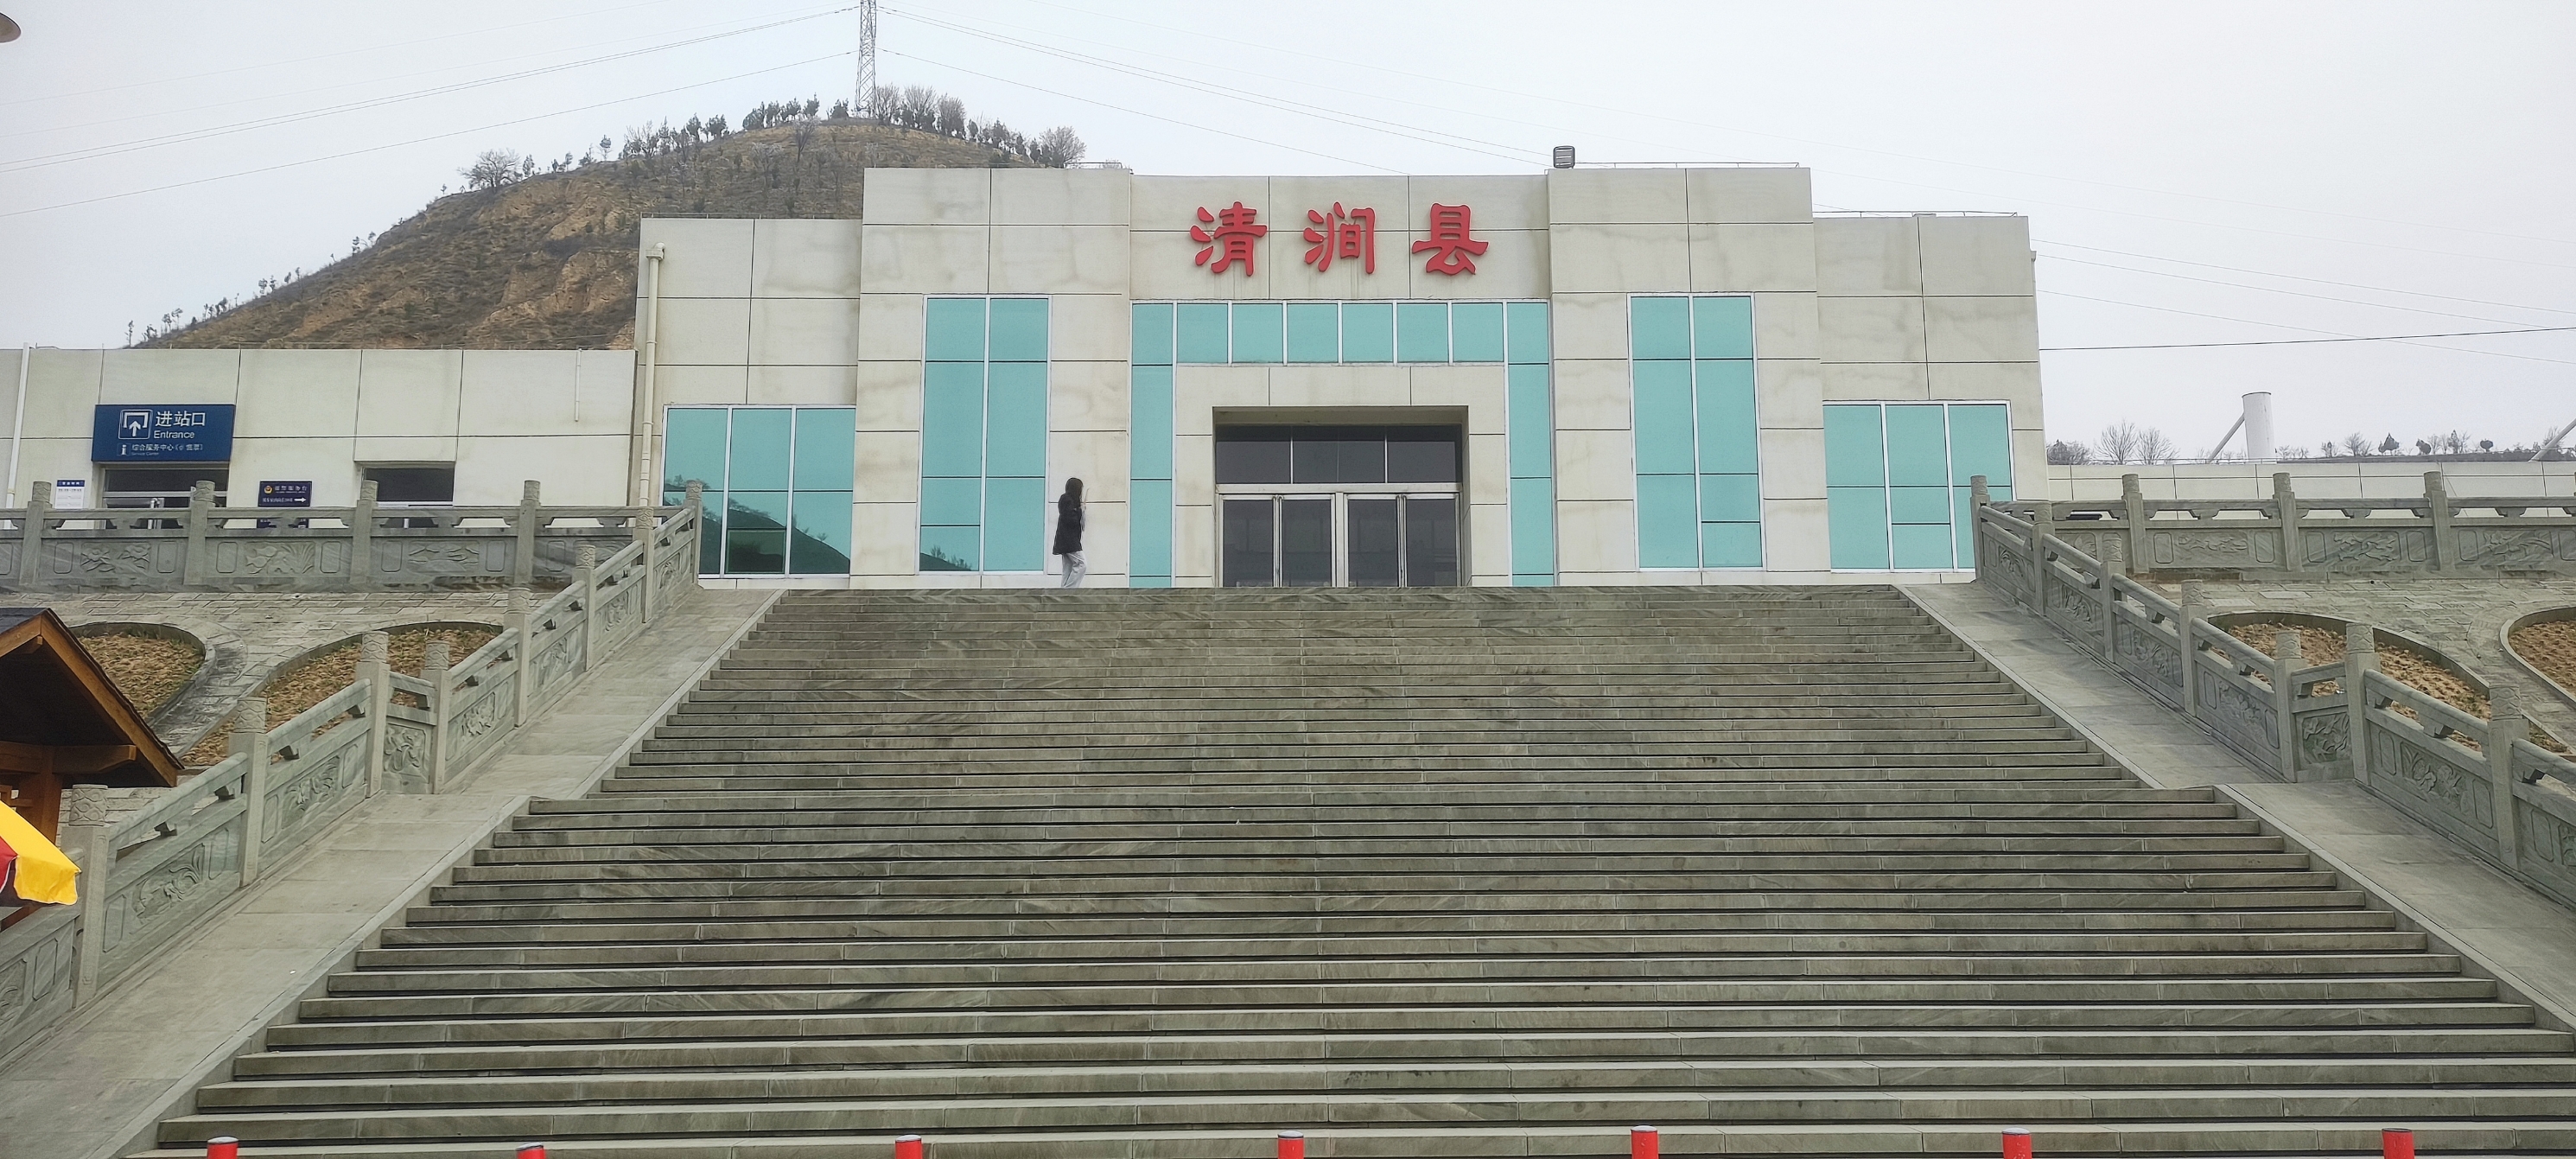 陕西省清涧县位于榆林市南部，毗邻延安市子长县，该县号称“红枣之乡”，属于典型的黄土高原风貌。县城郊外